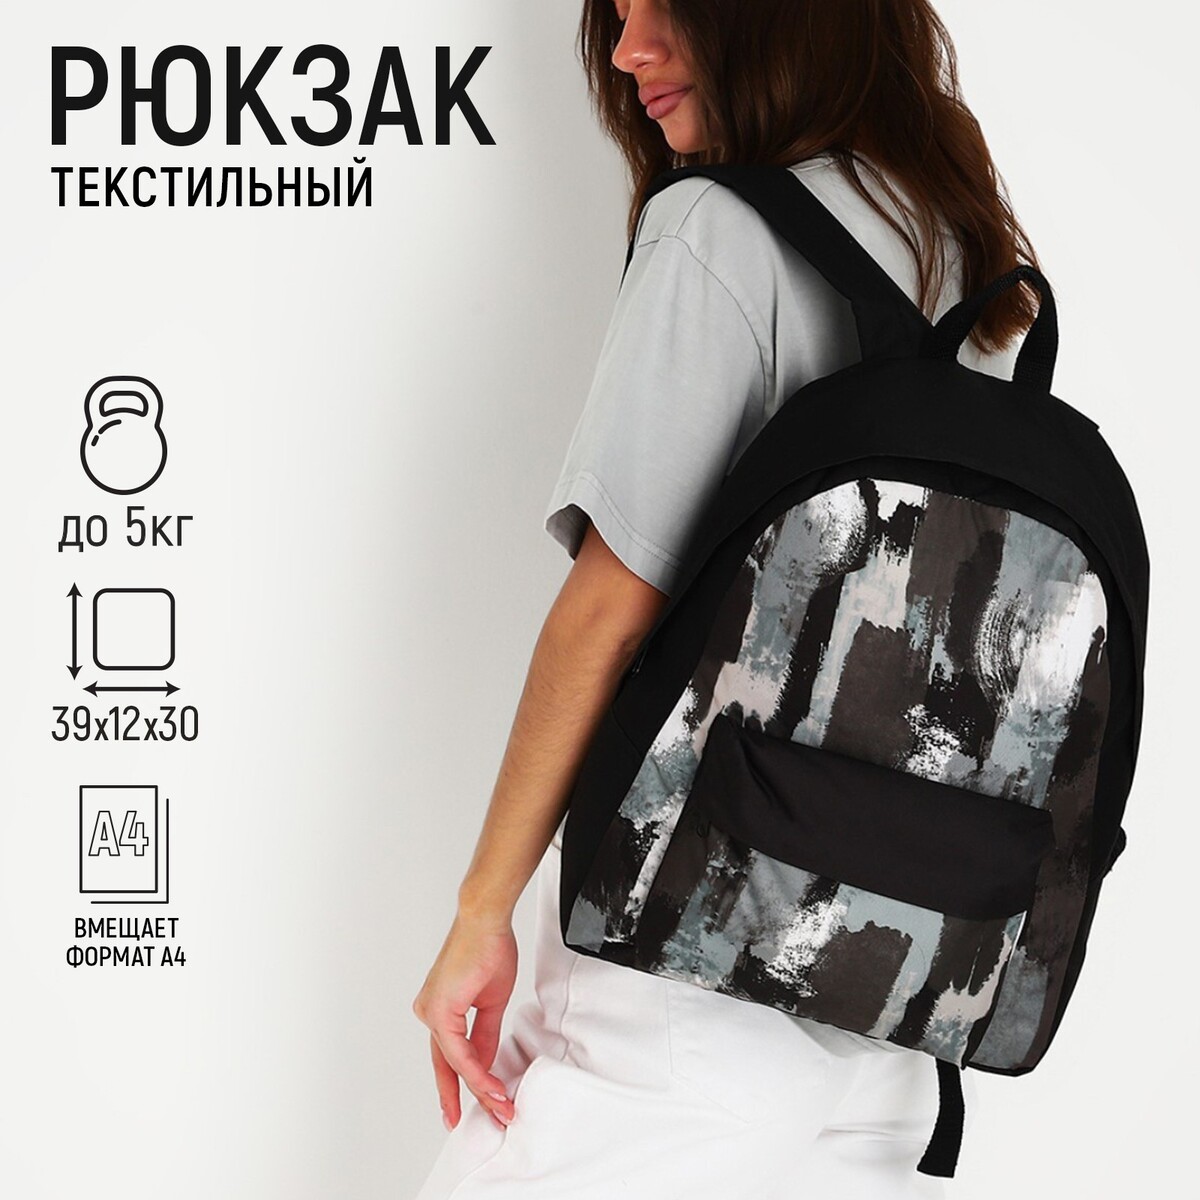 Рюкзак текстильный хаки, с карманом, 30х12х40см, цвет черный, серый рюкзак со светоотражающим карманом progress